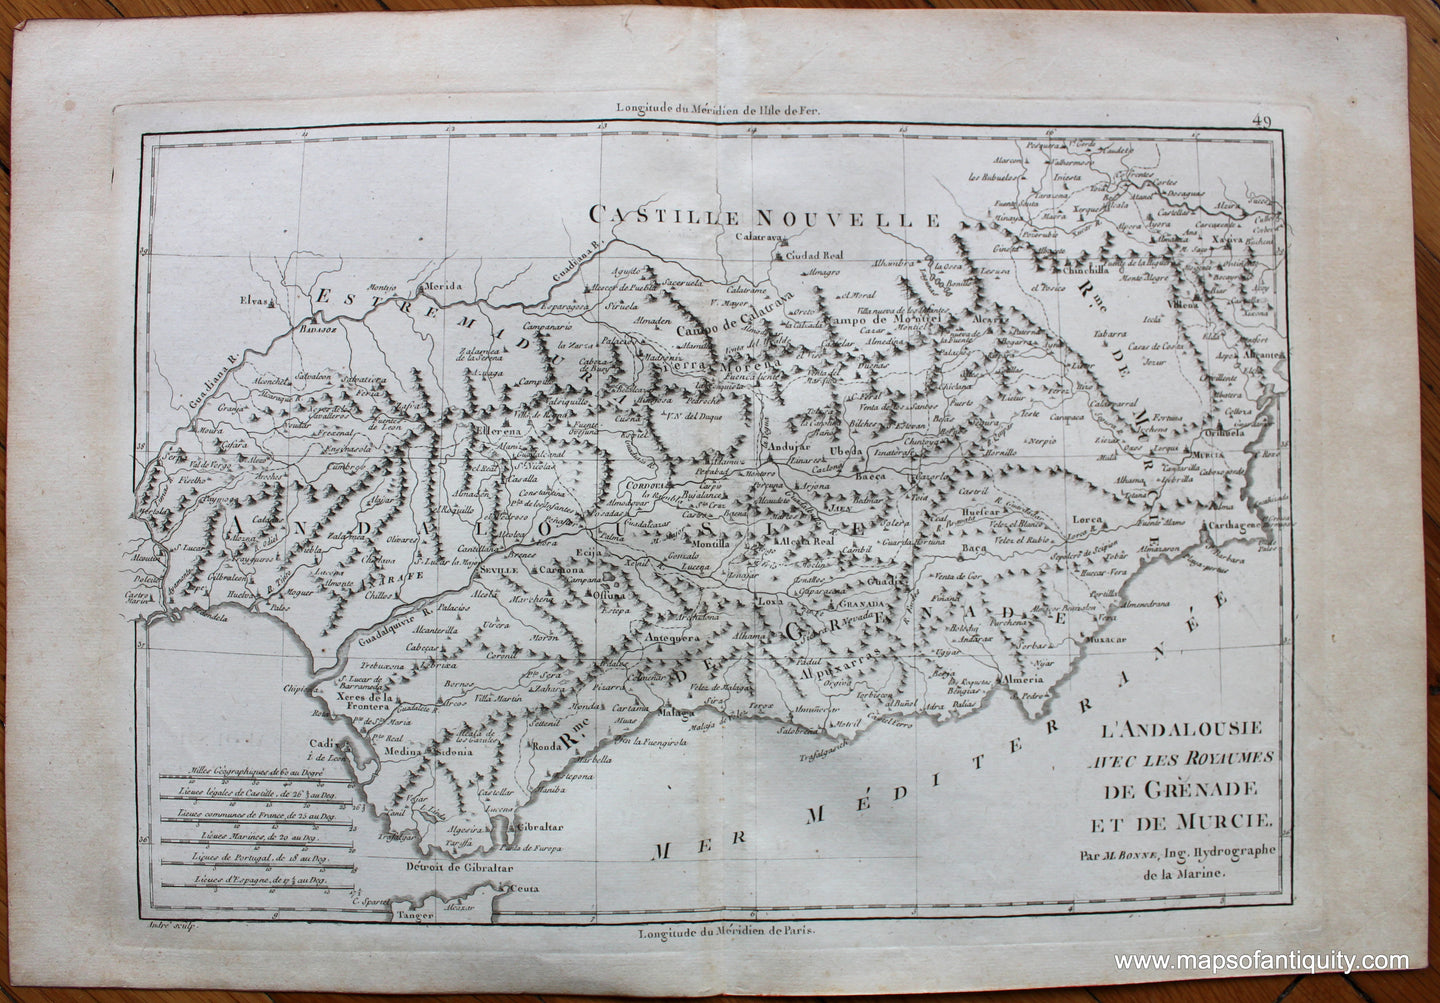 Genuine-Antique-Map-l'Andalousie-avec-les-Royaumes-de-Grenade-et-de-Murcie-Europe-Spain-&-Portugal-1787-Bonne-and-Desmarest-Maps-Of-Antiquity-1800s-19th-century